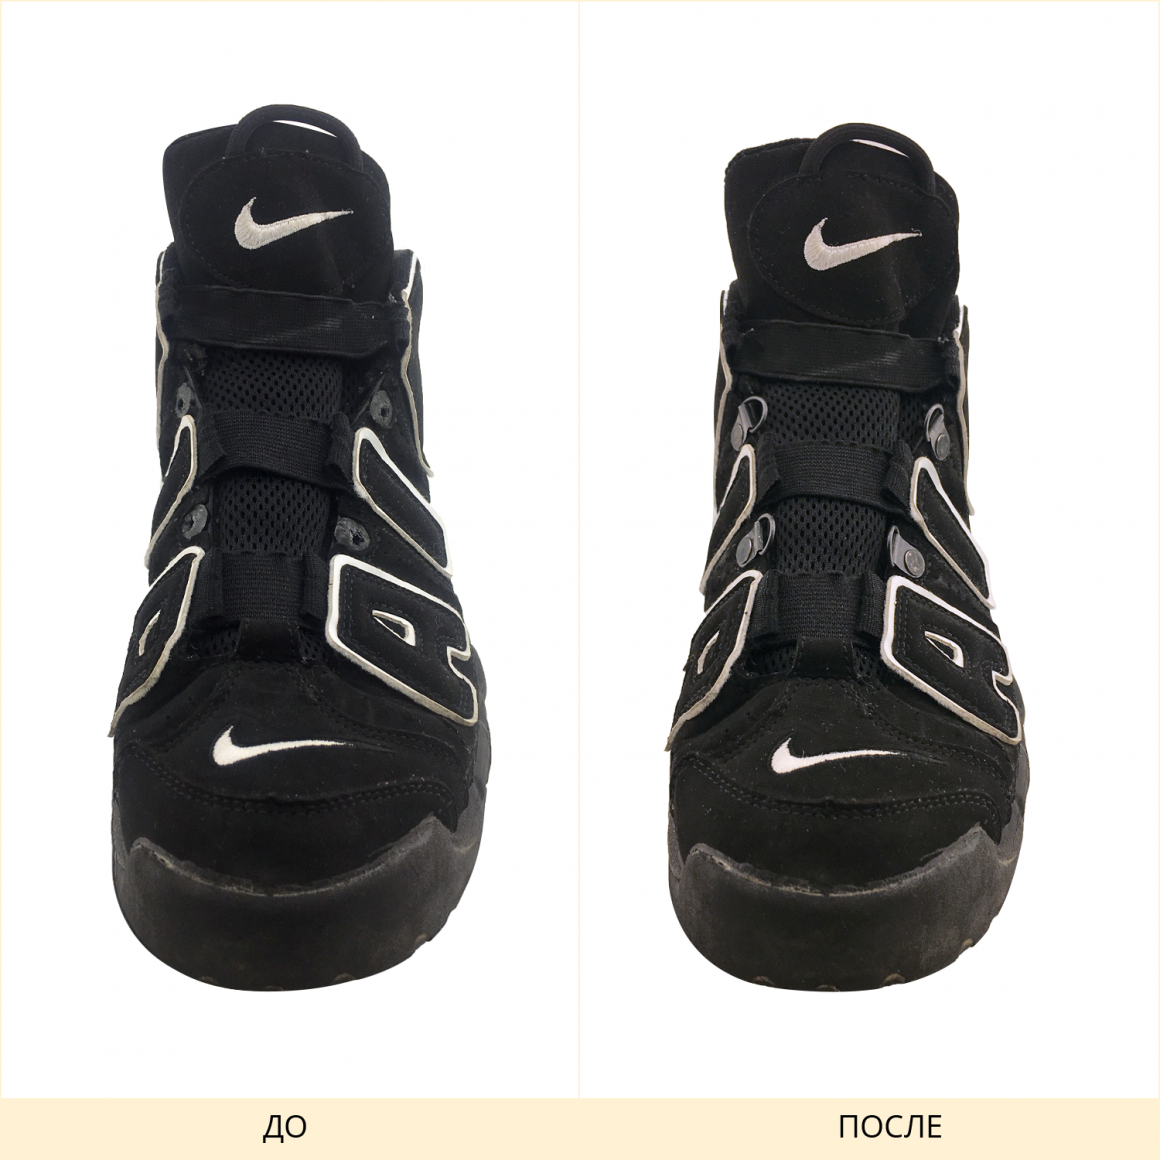 Фото до и после ремонта кроссовок nike air установка фурнитуры